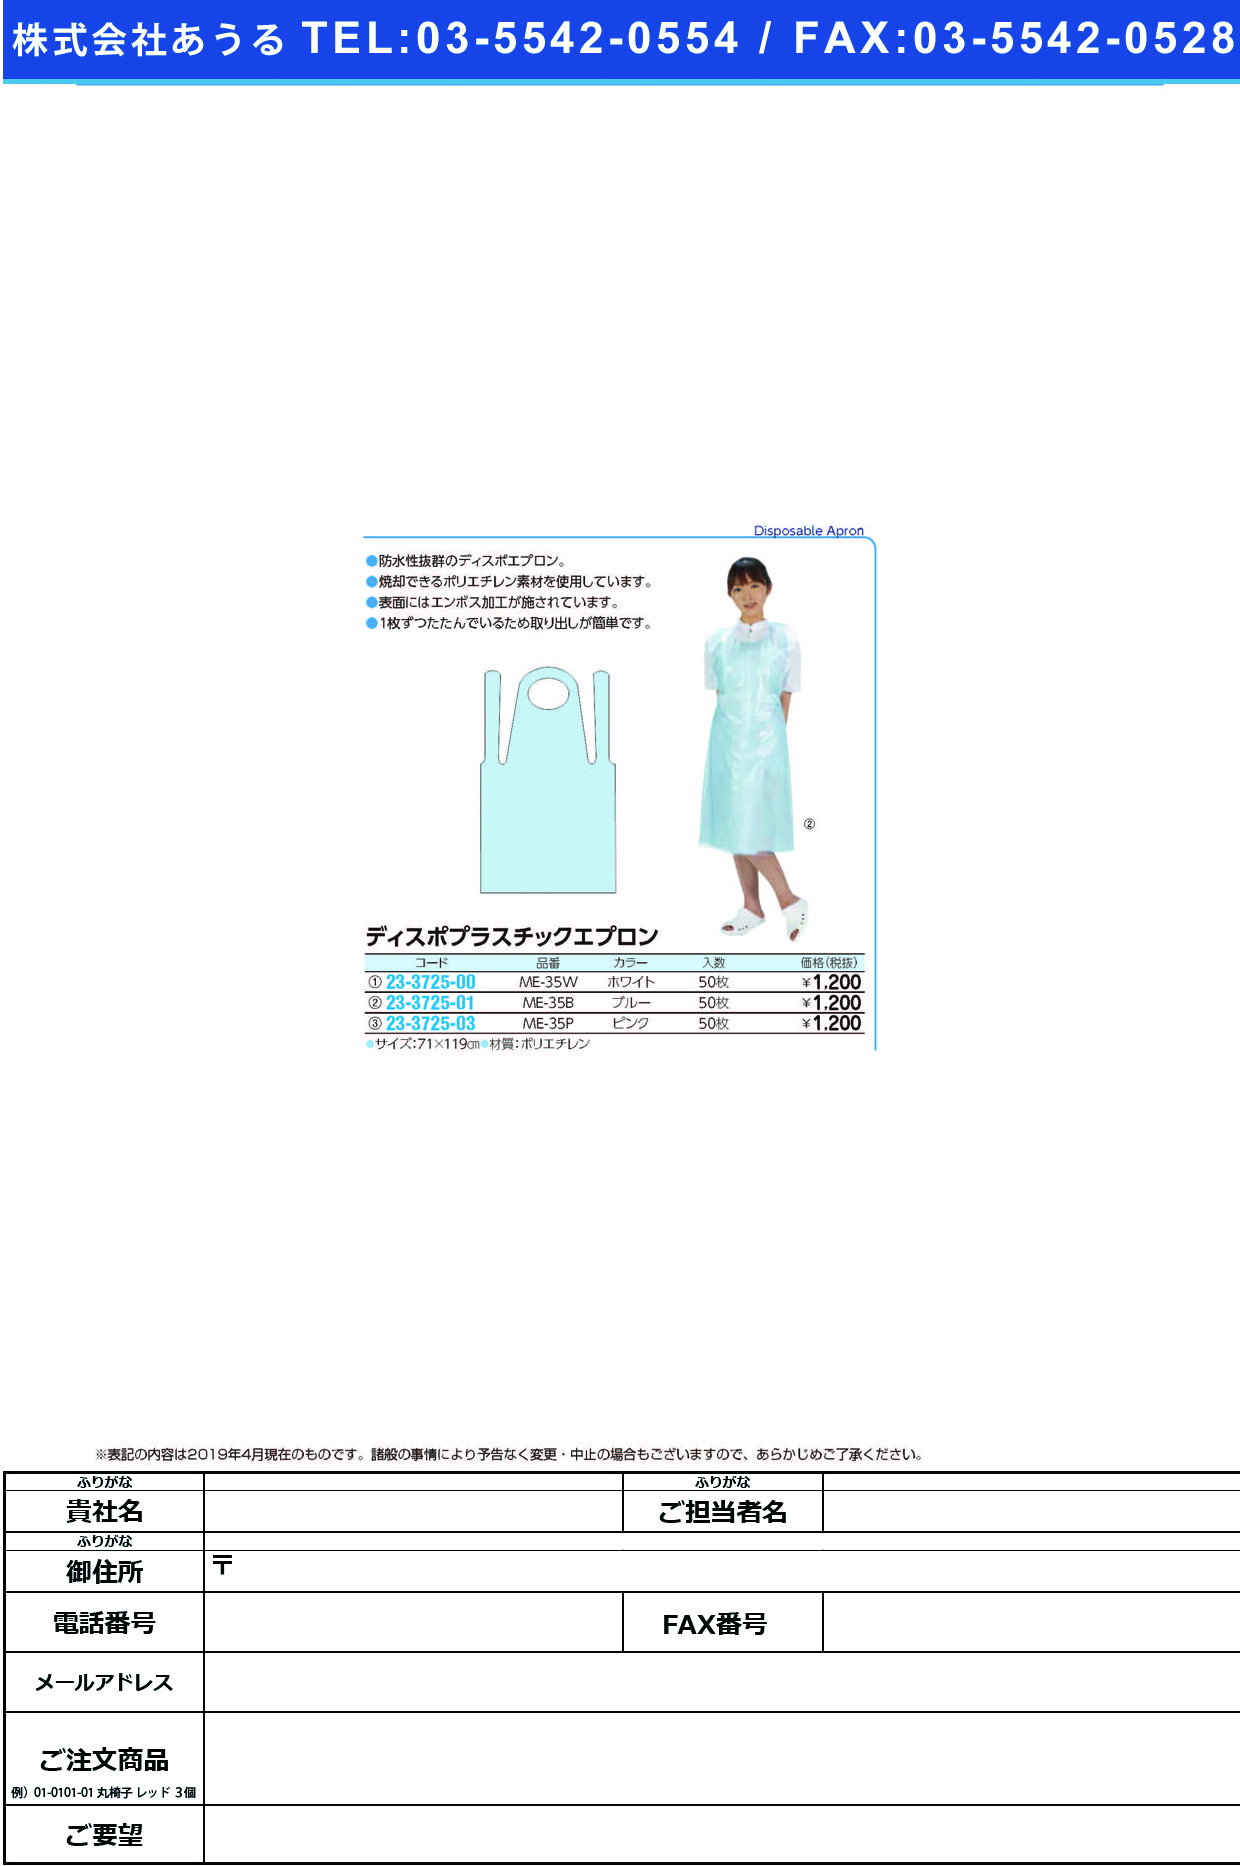 (23-3725-03)ディスポプラスチックエプロン ME-35P(ﾋﾟﾝｸ)50ﾏｲｲﾘ ﾃﾞｨｽﾎﾟﾌﾟﾗｽﾁｯｸｴﾌﾟﾛﾝ【1箱単位】【2019年カタログ商品】